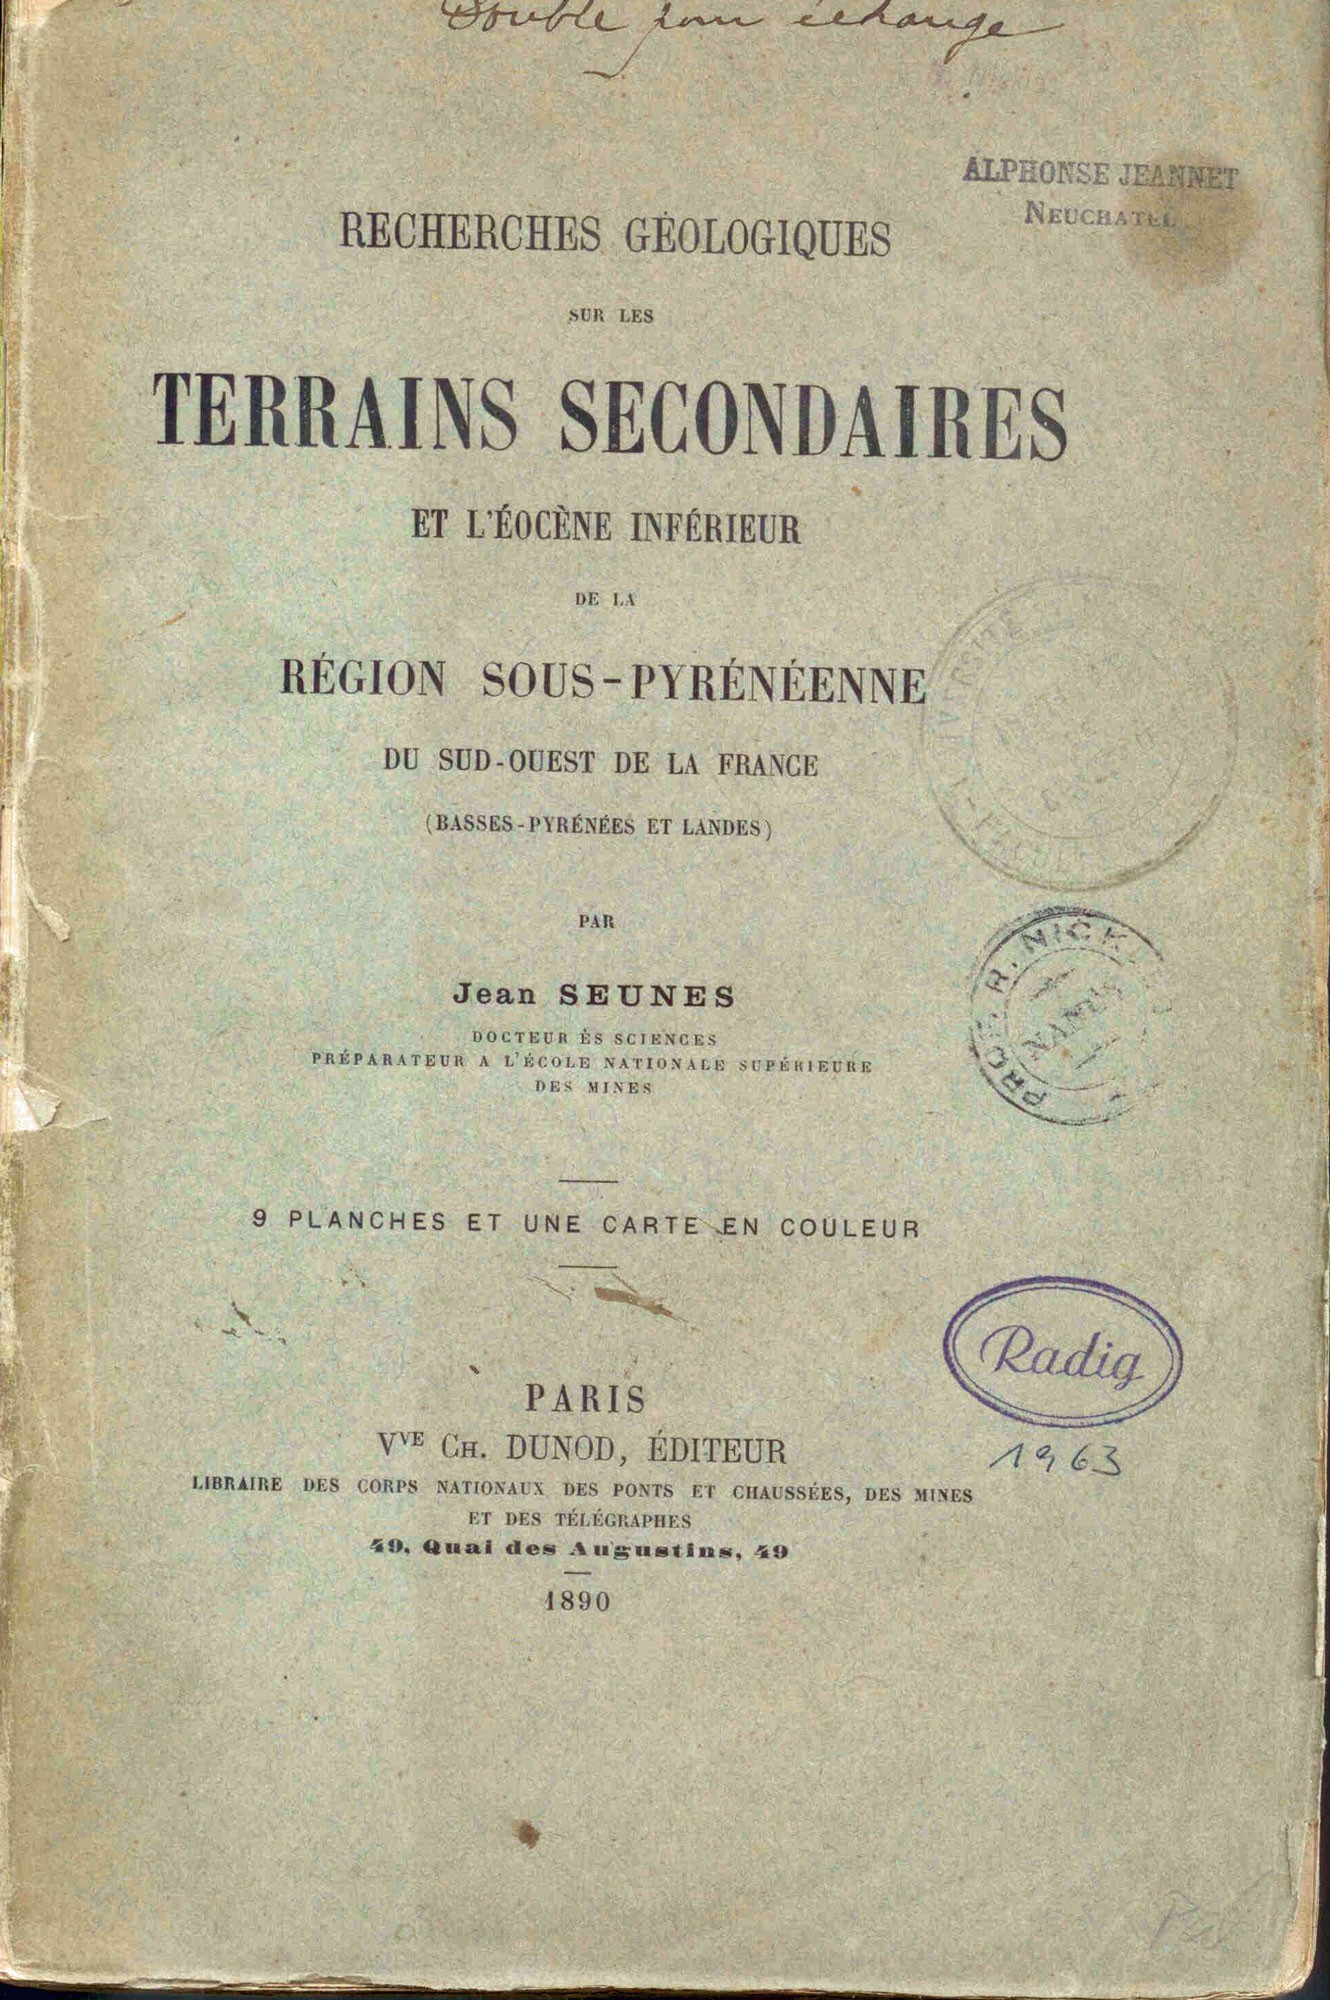 Seunes, J.: Recherches geologiques sur les terrains secondaires et l'éocène inférieur de la région Sous-Pyrénéenne du sud-ouest de la France (Basses-Pyrénées et Landes).